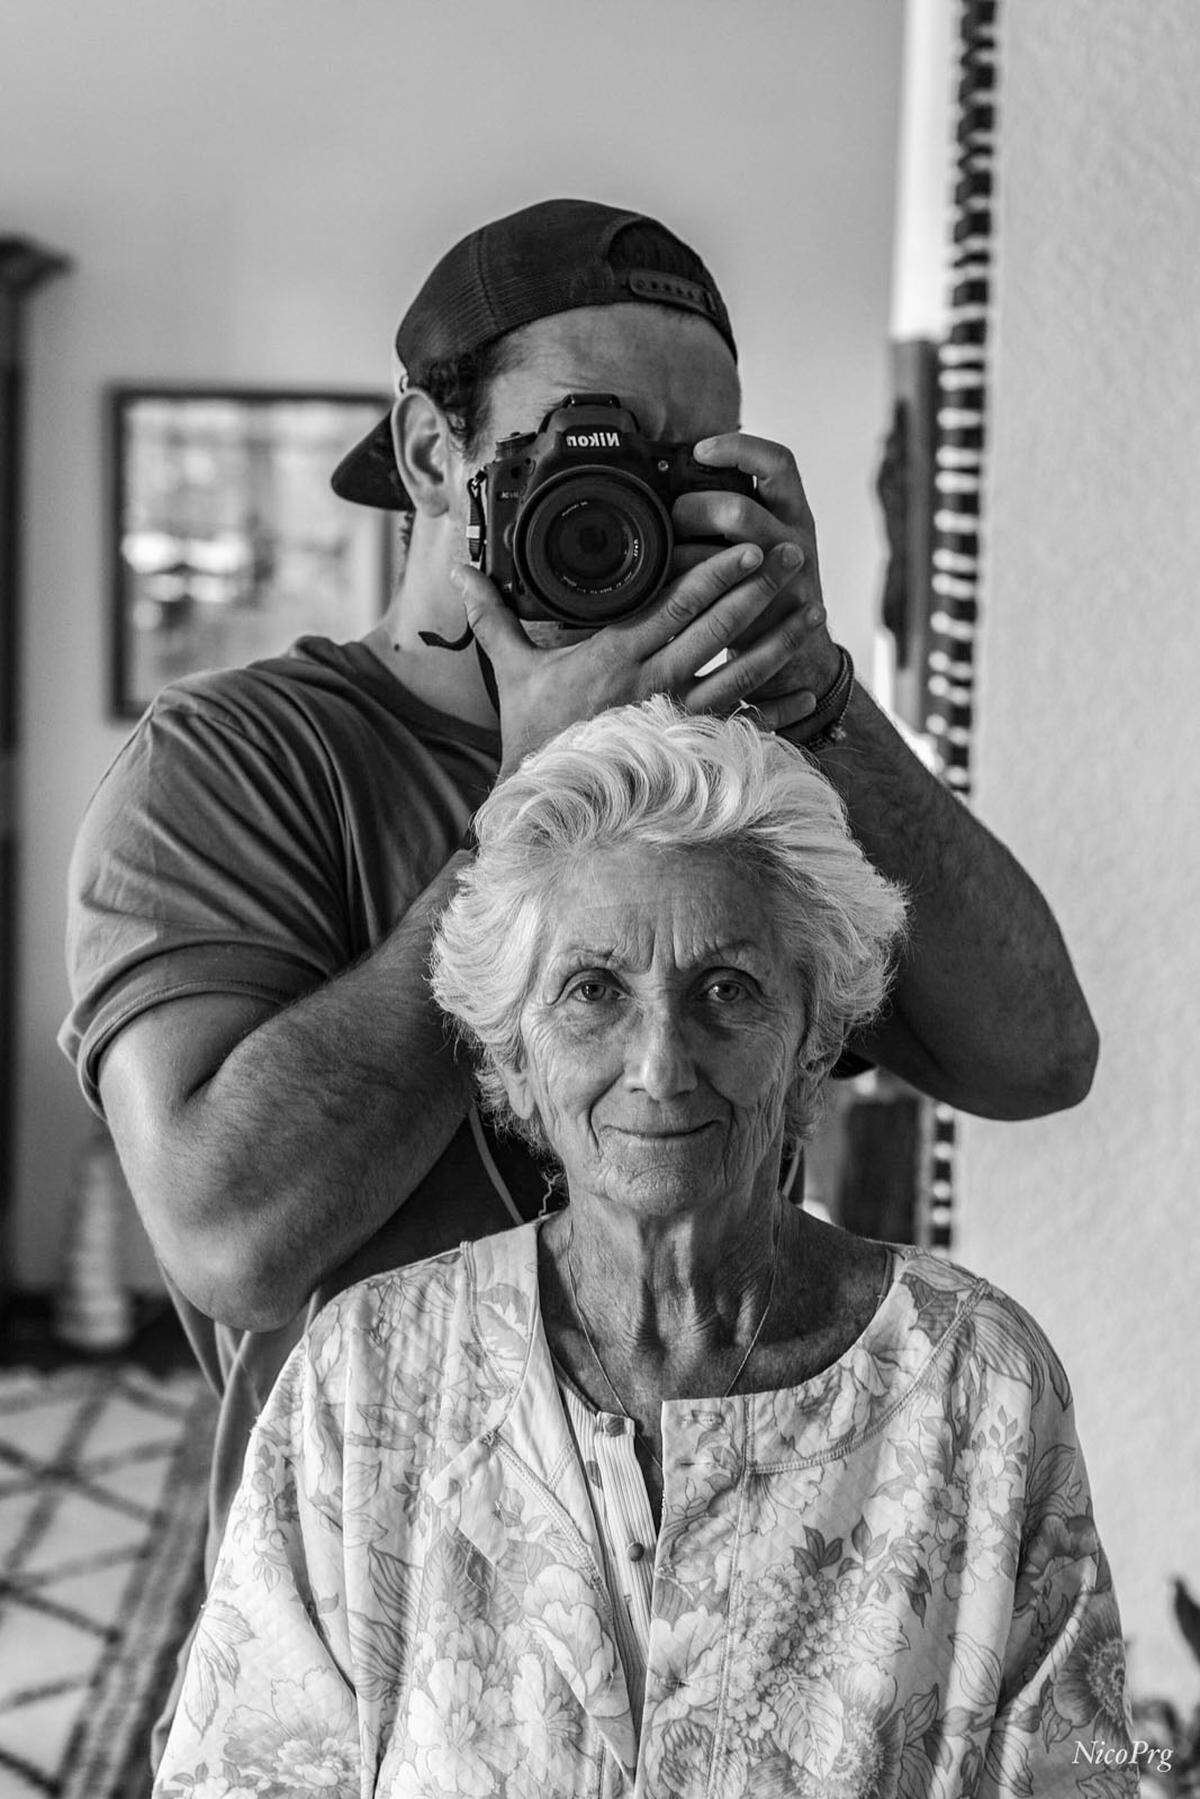 "Hier ist meine wundervolle Großmutter", lässt ein User aus Frankreich wissen, "ich wollte die Schönheit und Liebe in ihren Augen einfangen."